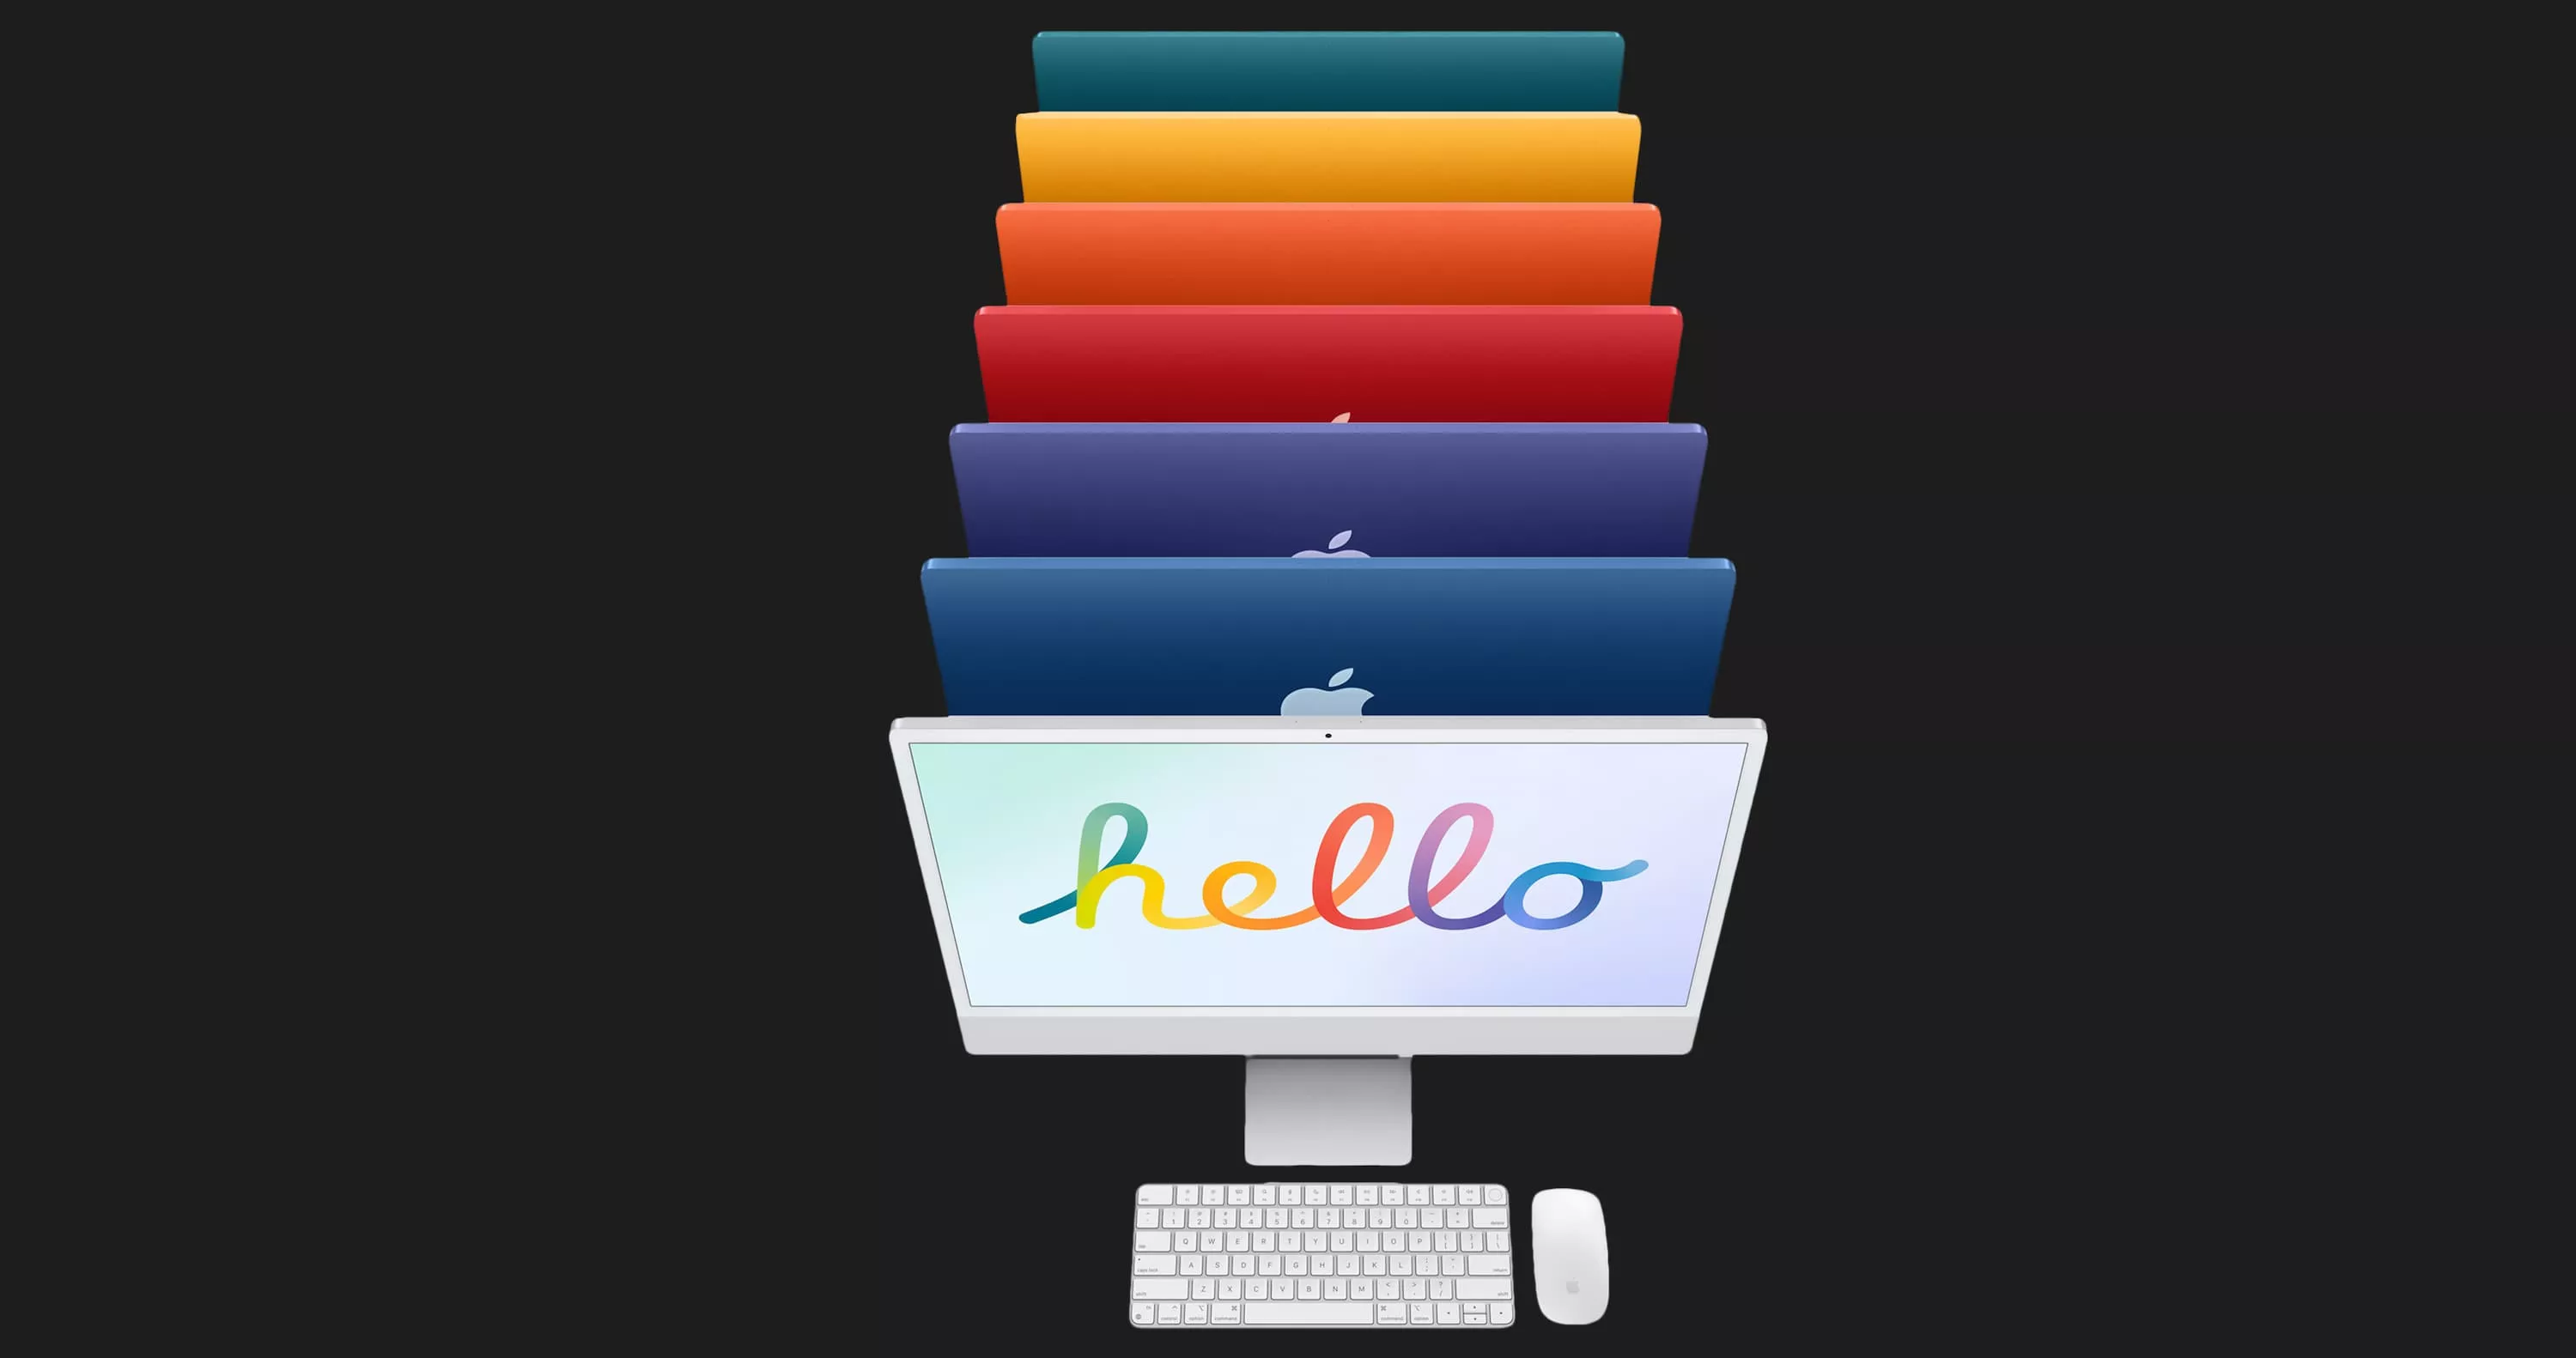 Apple iMac 24 with Retina 4.5K, 256GB, 8 CPU / 7 GPU (Silver) (MGTF3)